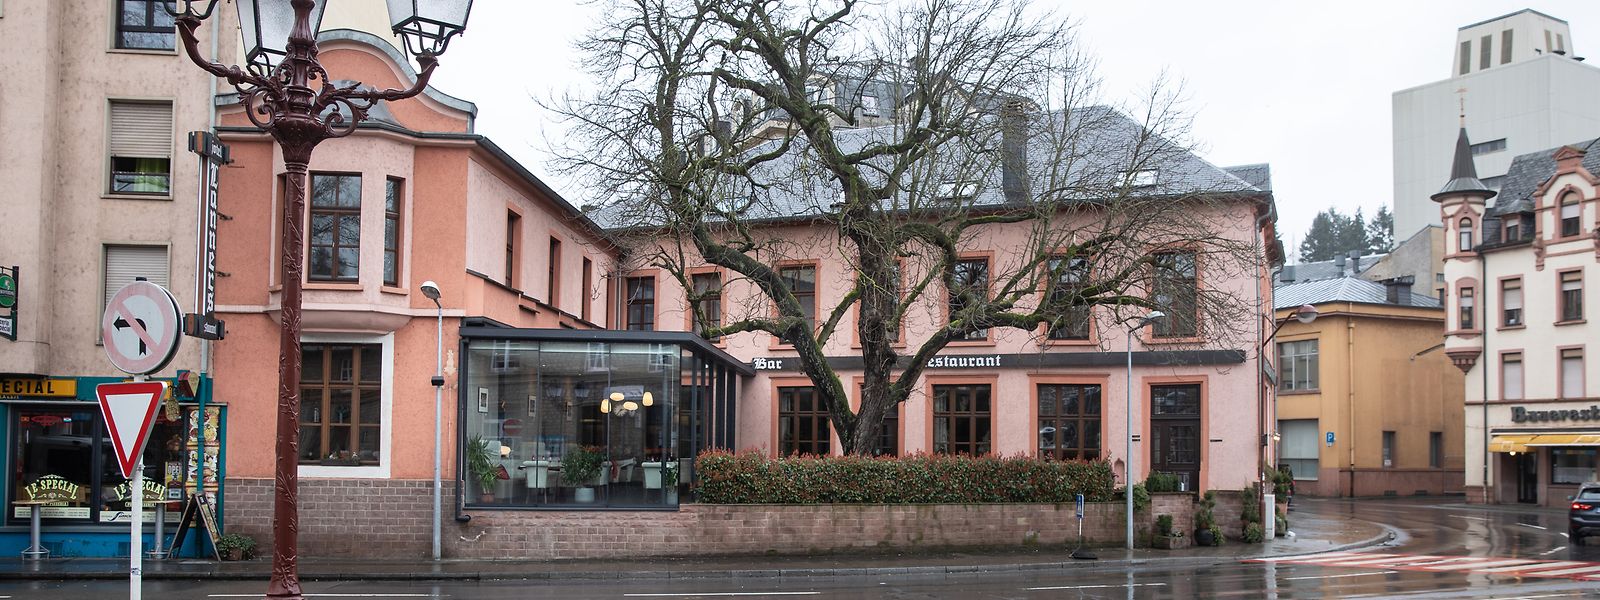 Das Hotel und Restaurant Lanners befindet sich direkt gegenüber dem Bahnhofsgebäude in Ettelbrück. Die davor befindliche Straße soll in eine Fußgängerzone umgewandelt werden, in der allerdings auch Busse fahren dürfen.